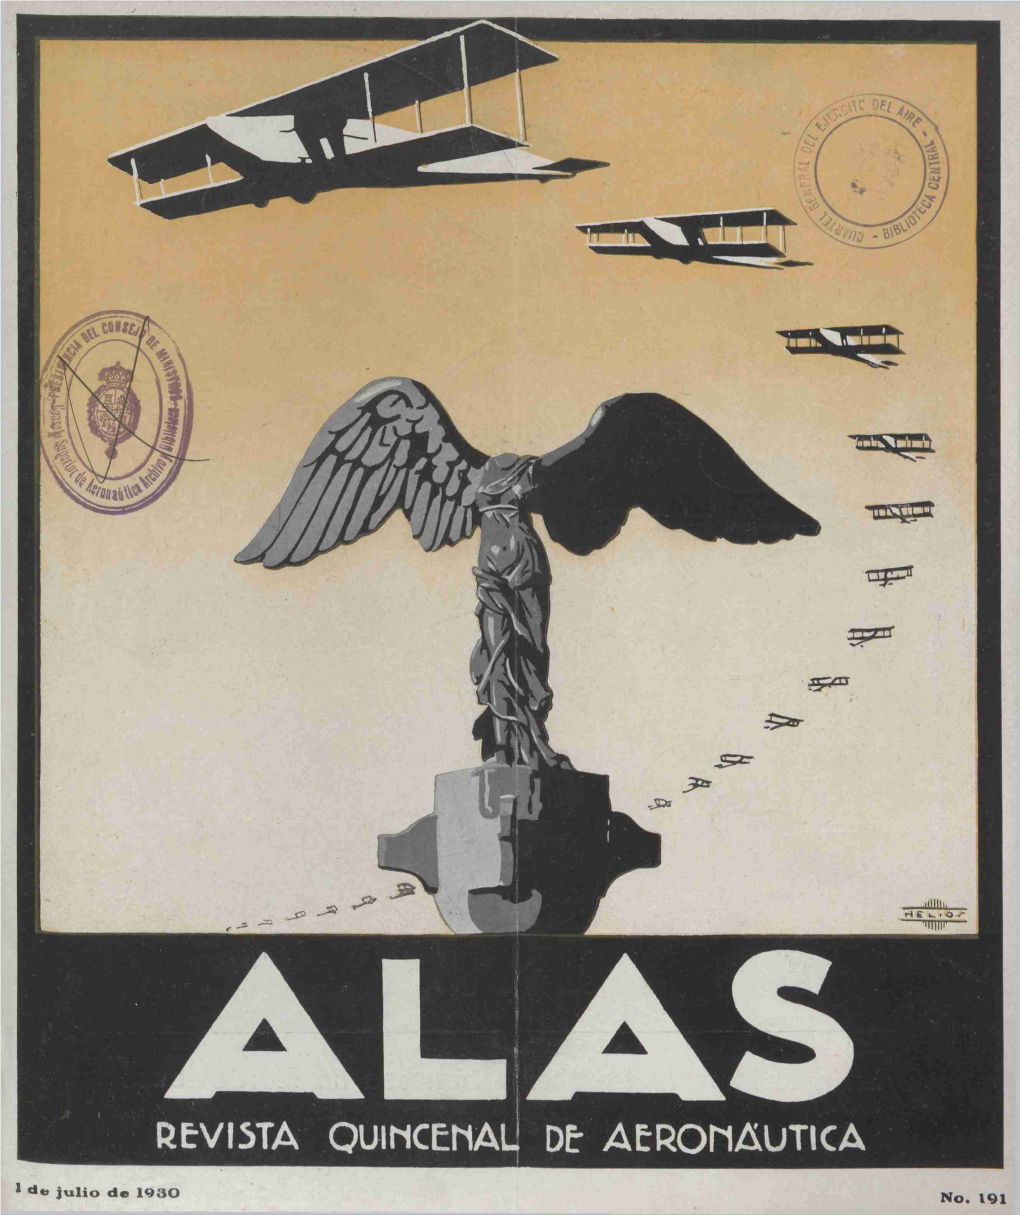 1 Julio De 1930 No, 191 La Más Importante Fábrica Francesa De Hidroaviones • V - '*/*’ •• 5, Rue Pleyel-Saint Dcnis